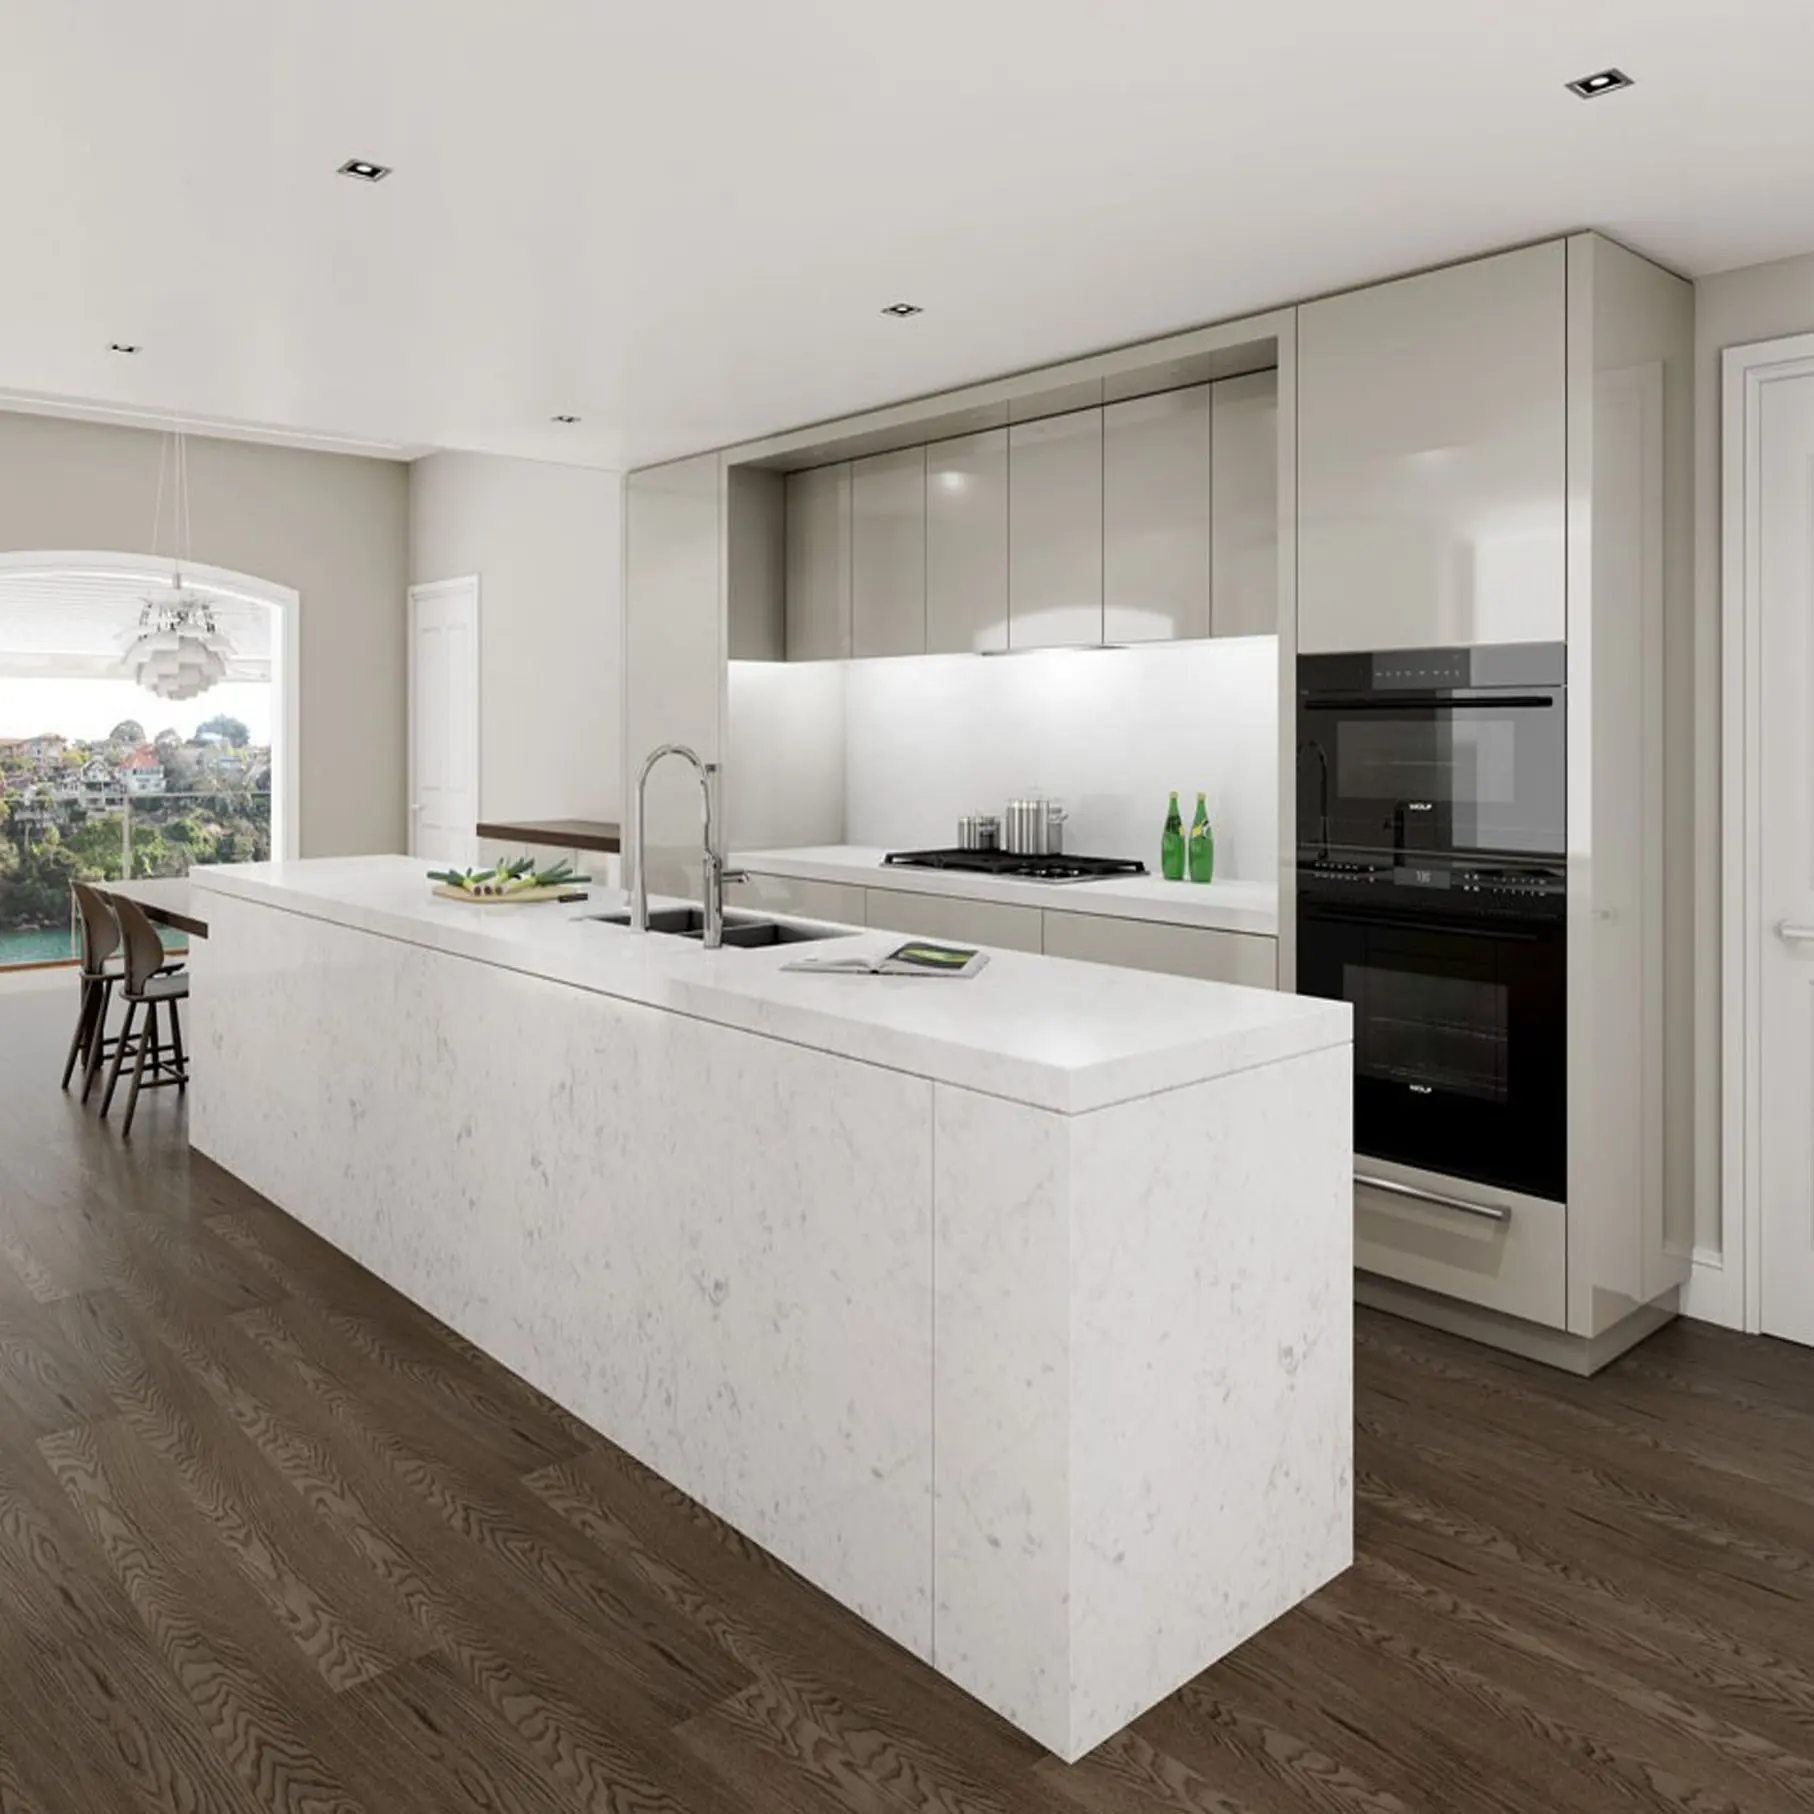 ความคิดผลิตภัณฑ์ใหม่ห้องครัวขายร้อน Modular หนึ่งผนังห้องครัวที่มีการออกแบบเกาะสีขาว